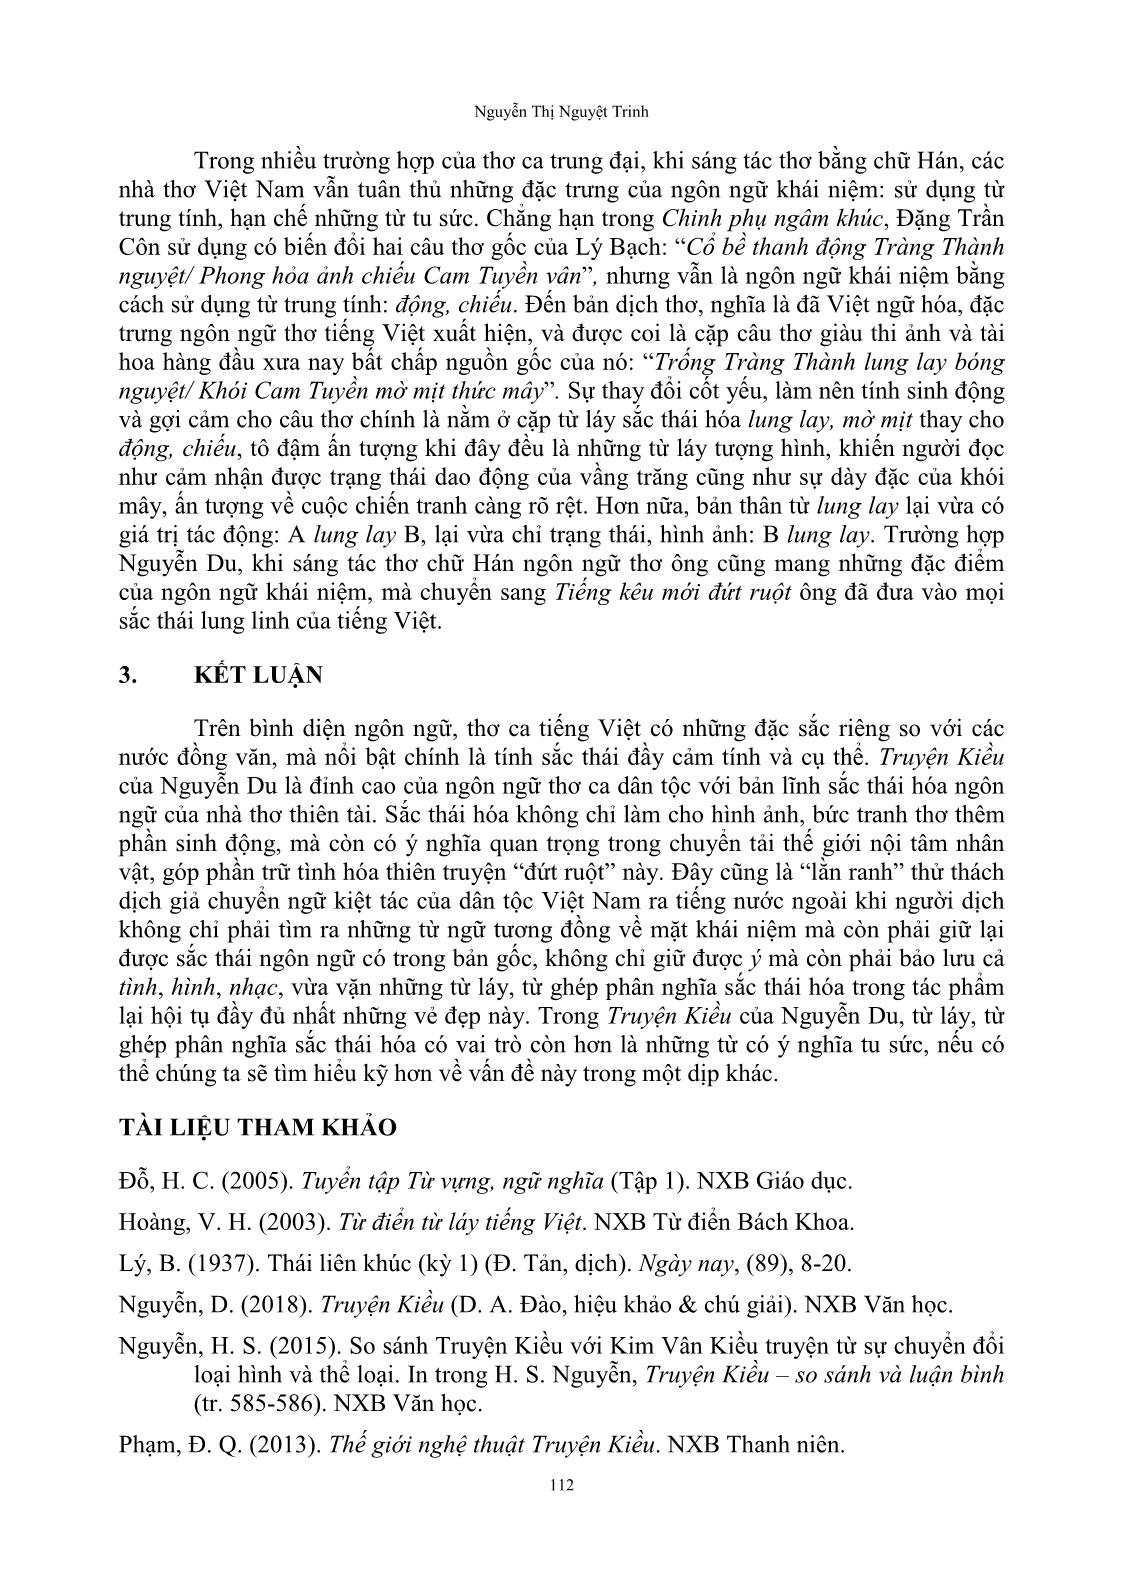 Sắc thái hóa ngôn ngữ thơ trong truyện Kiều của Nguyễn Du trang 9